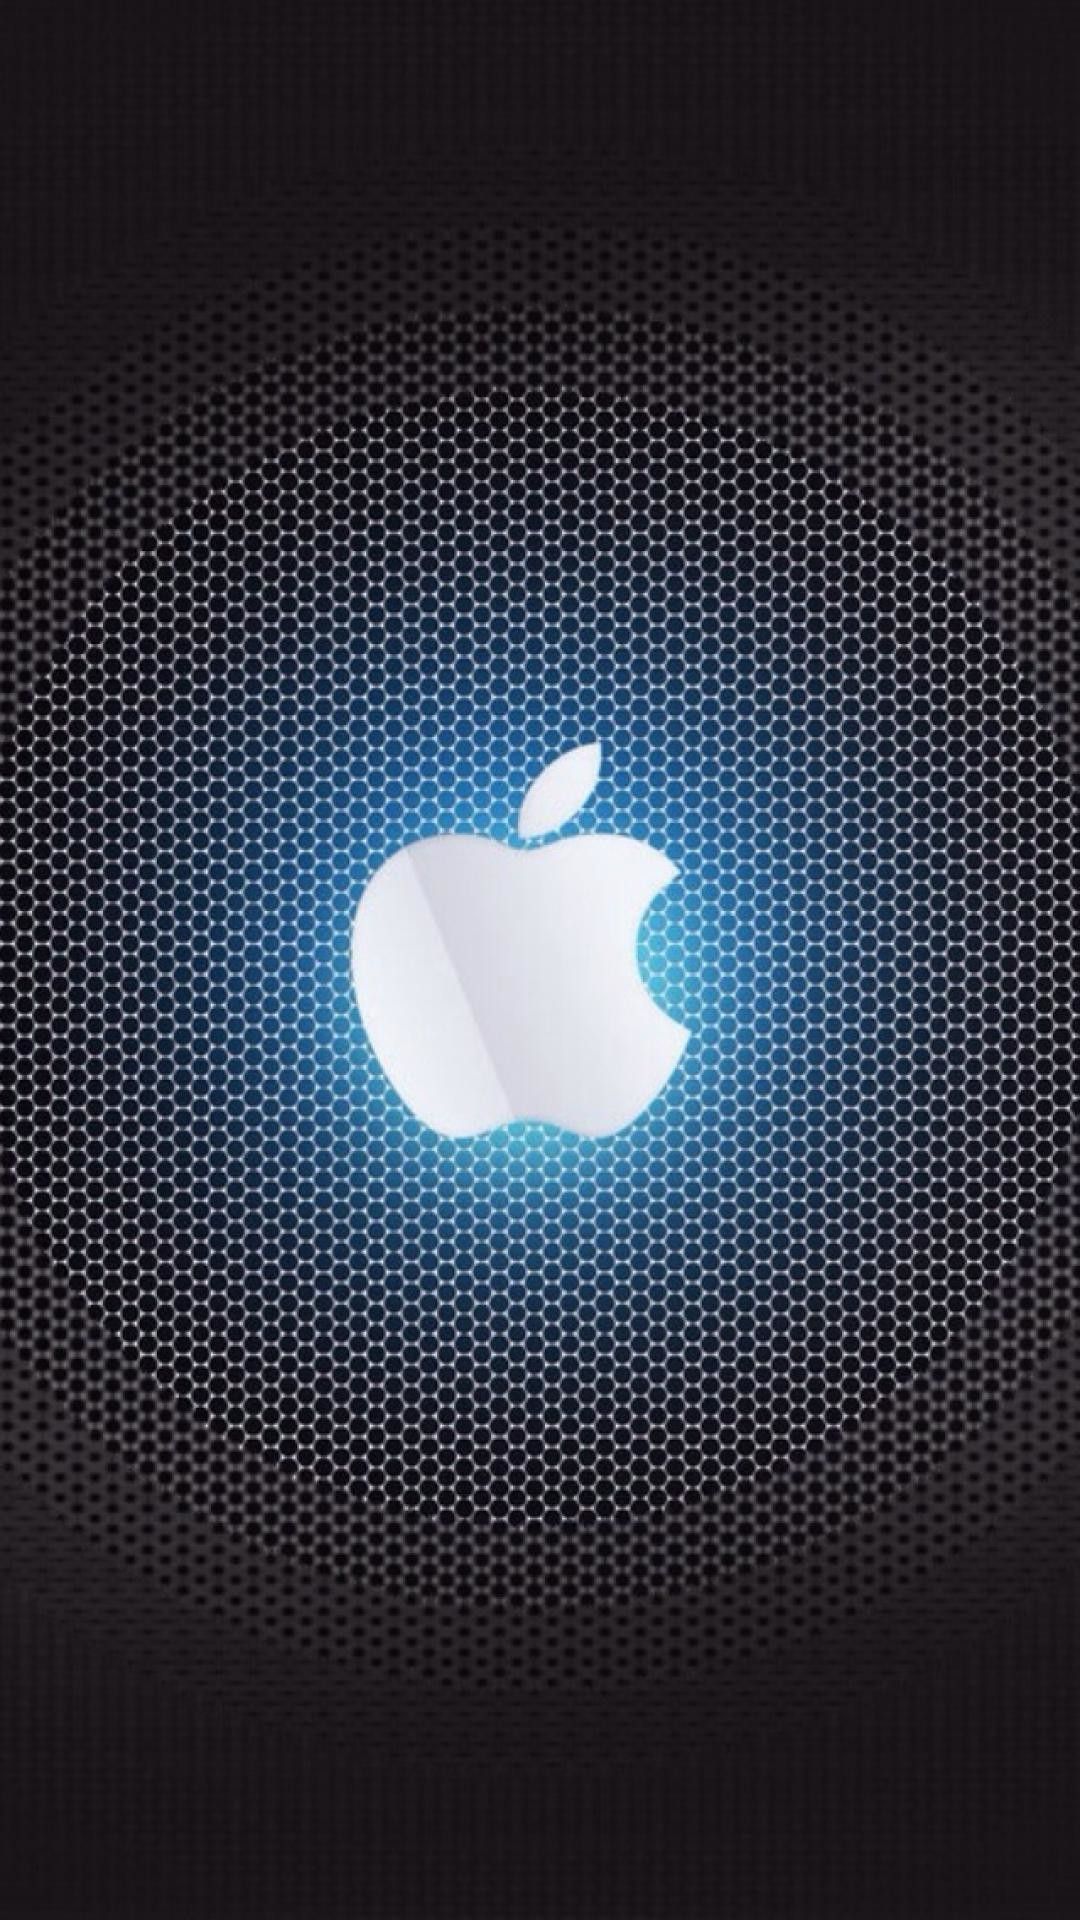 46 Apple 4K Wallpaper  WallpaperSafari